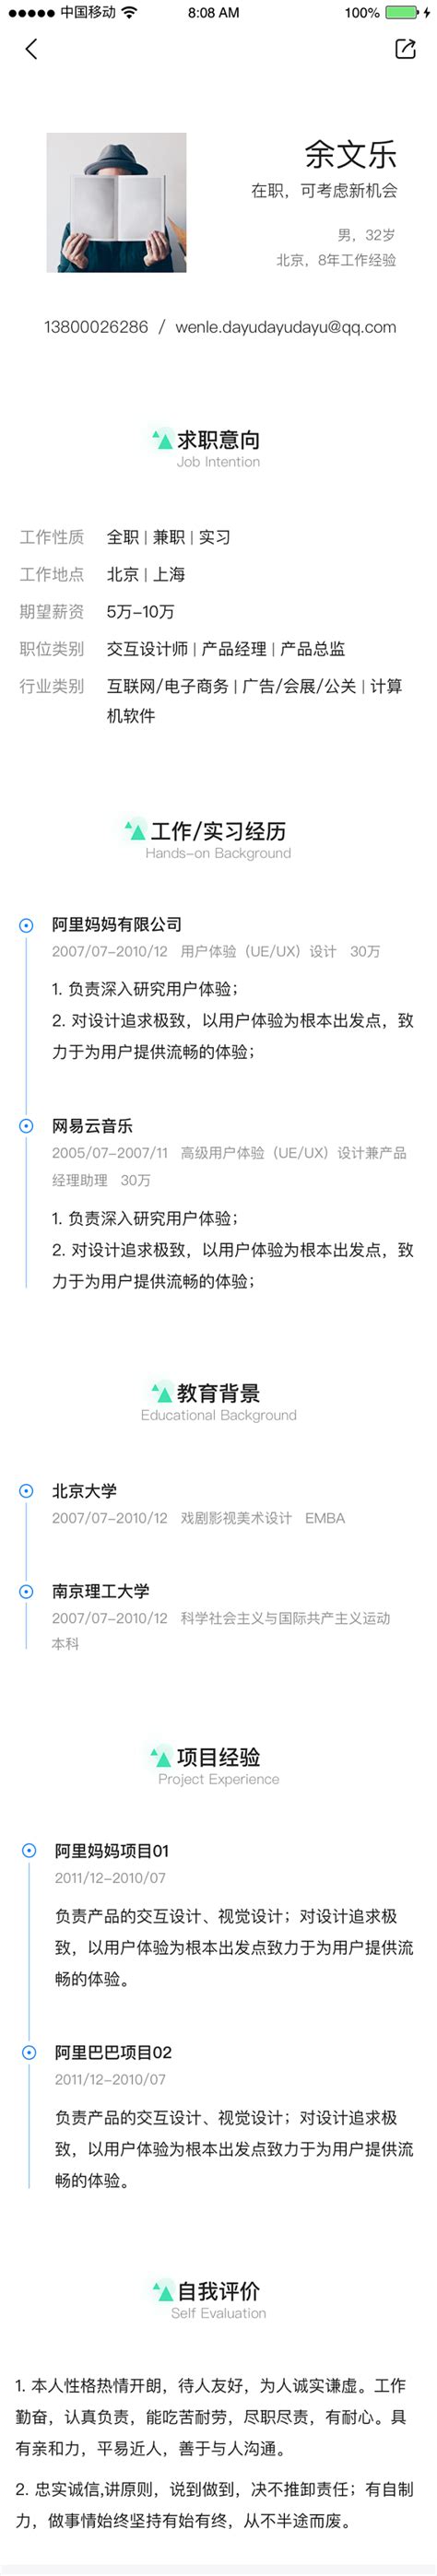 【智联招聘官网】zhaopin.com品牌介绍_客服电话_公司地址_怎么样-十爱网